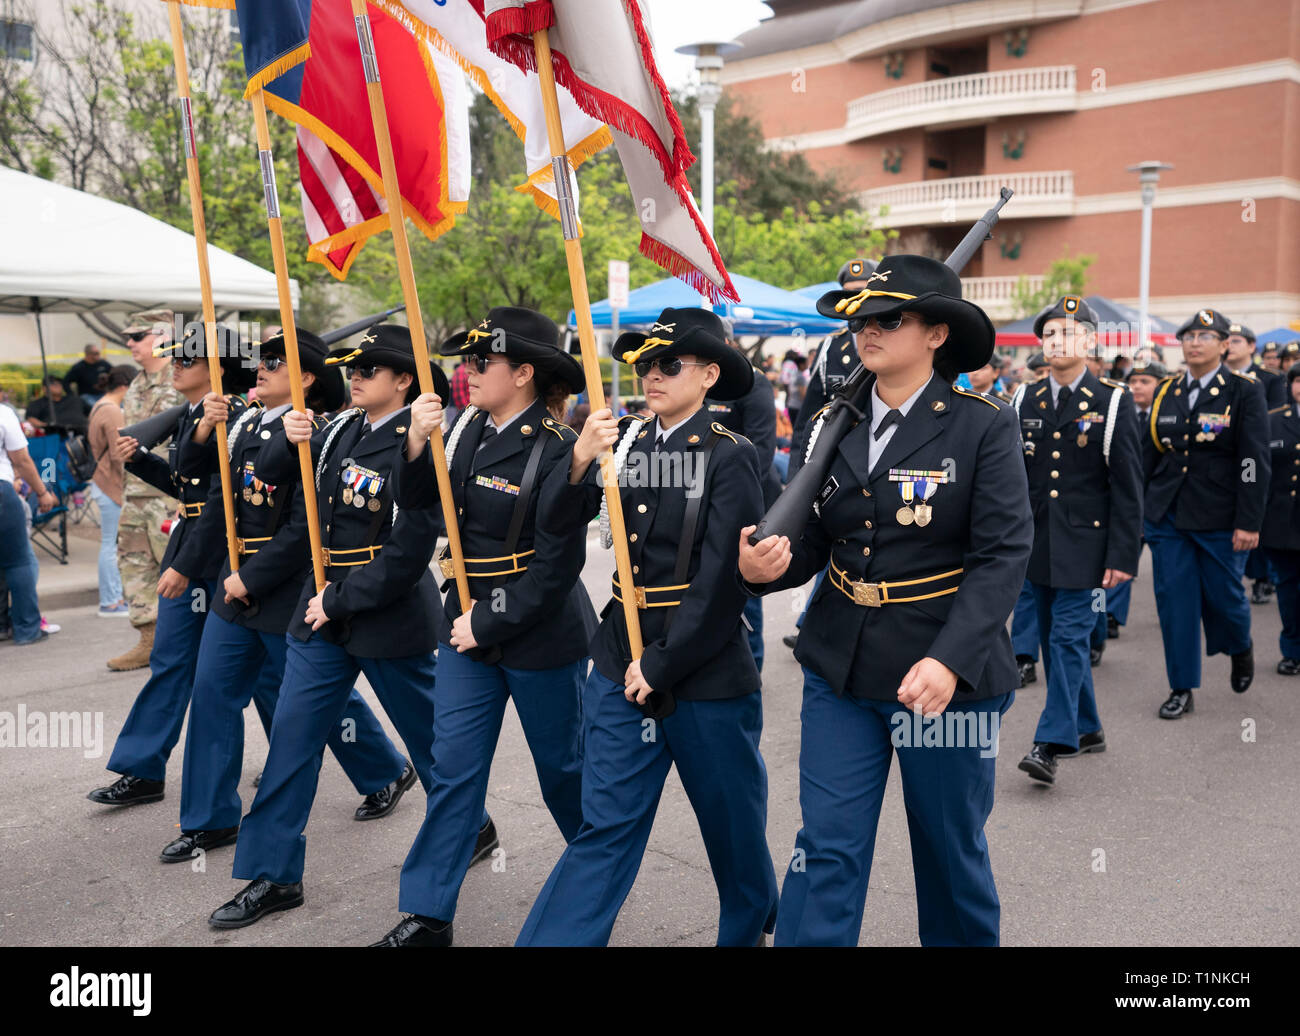 ROTC Junior High School (Reserve Officer Training Corps) cadets marcher en formation au cours de l'Anniversaire de Washington annuel parade, Laredo TX Banque D'Images